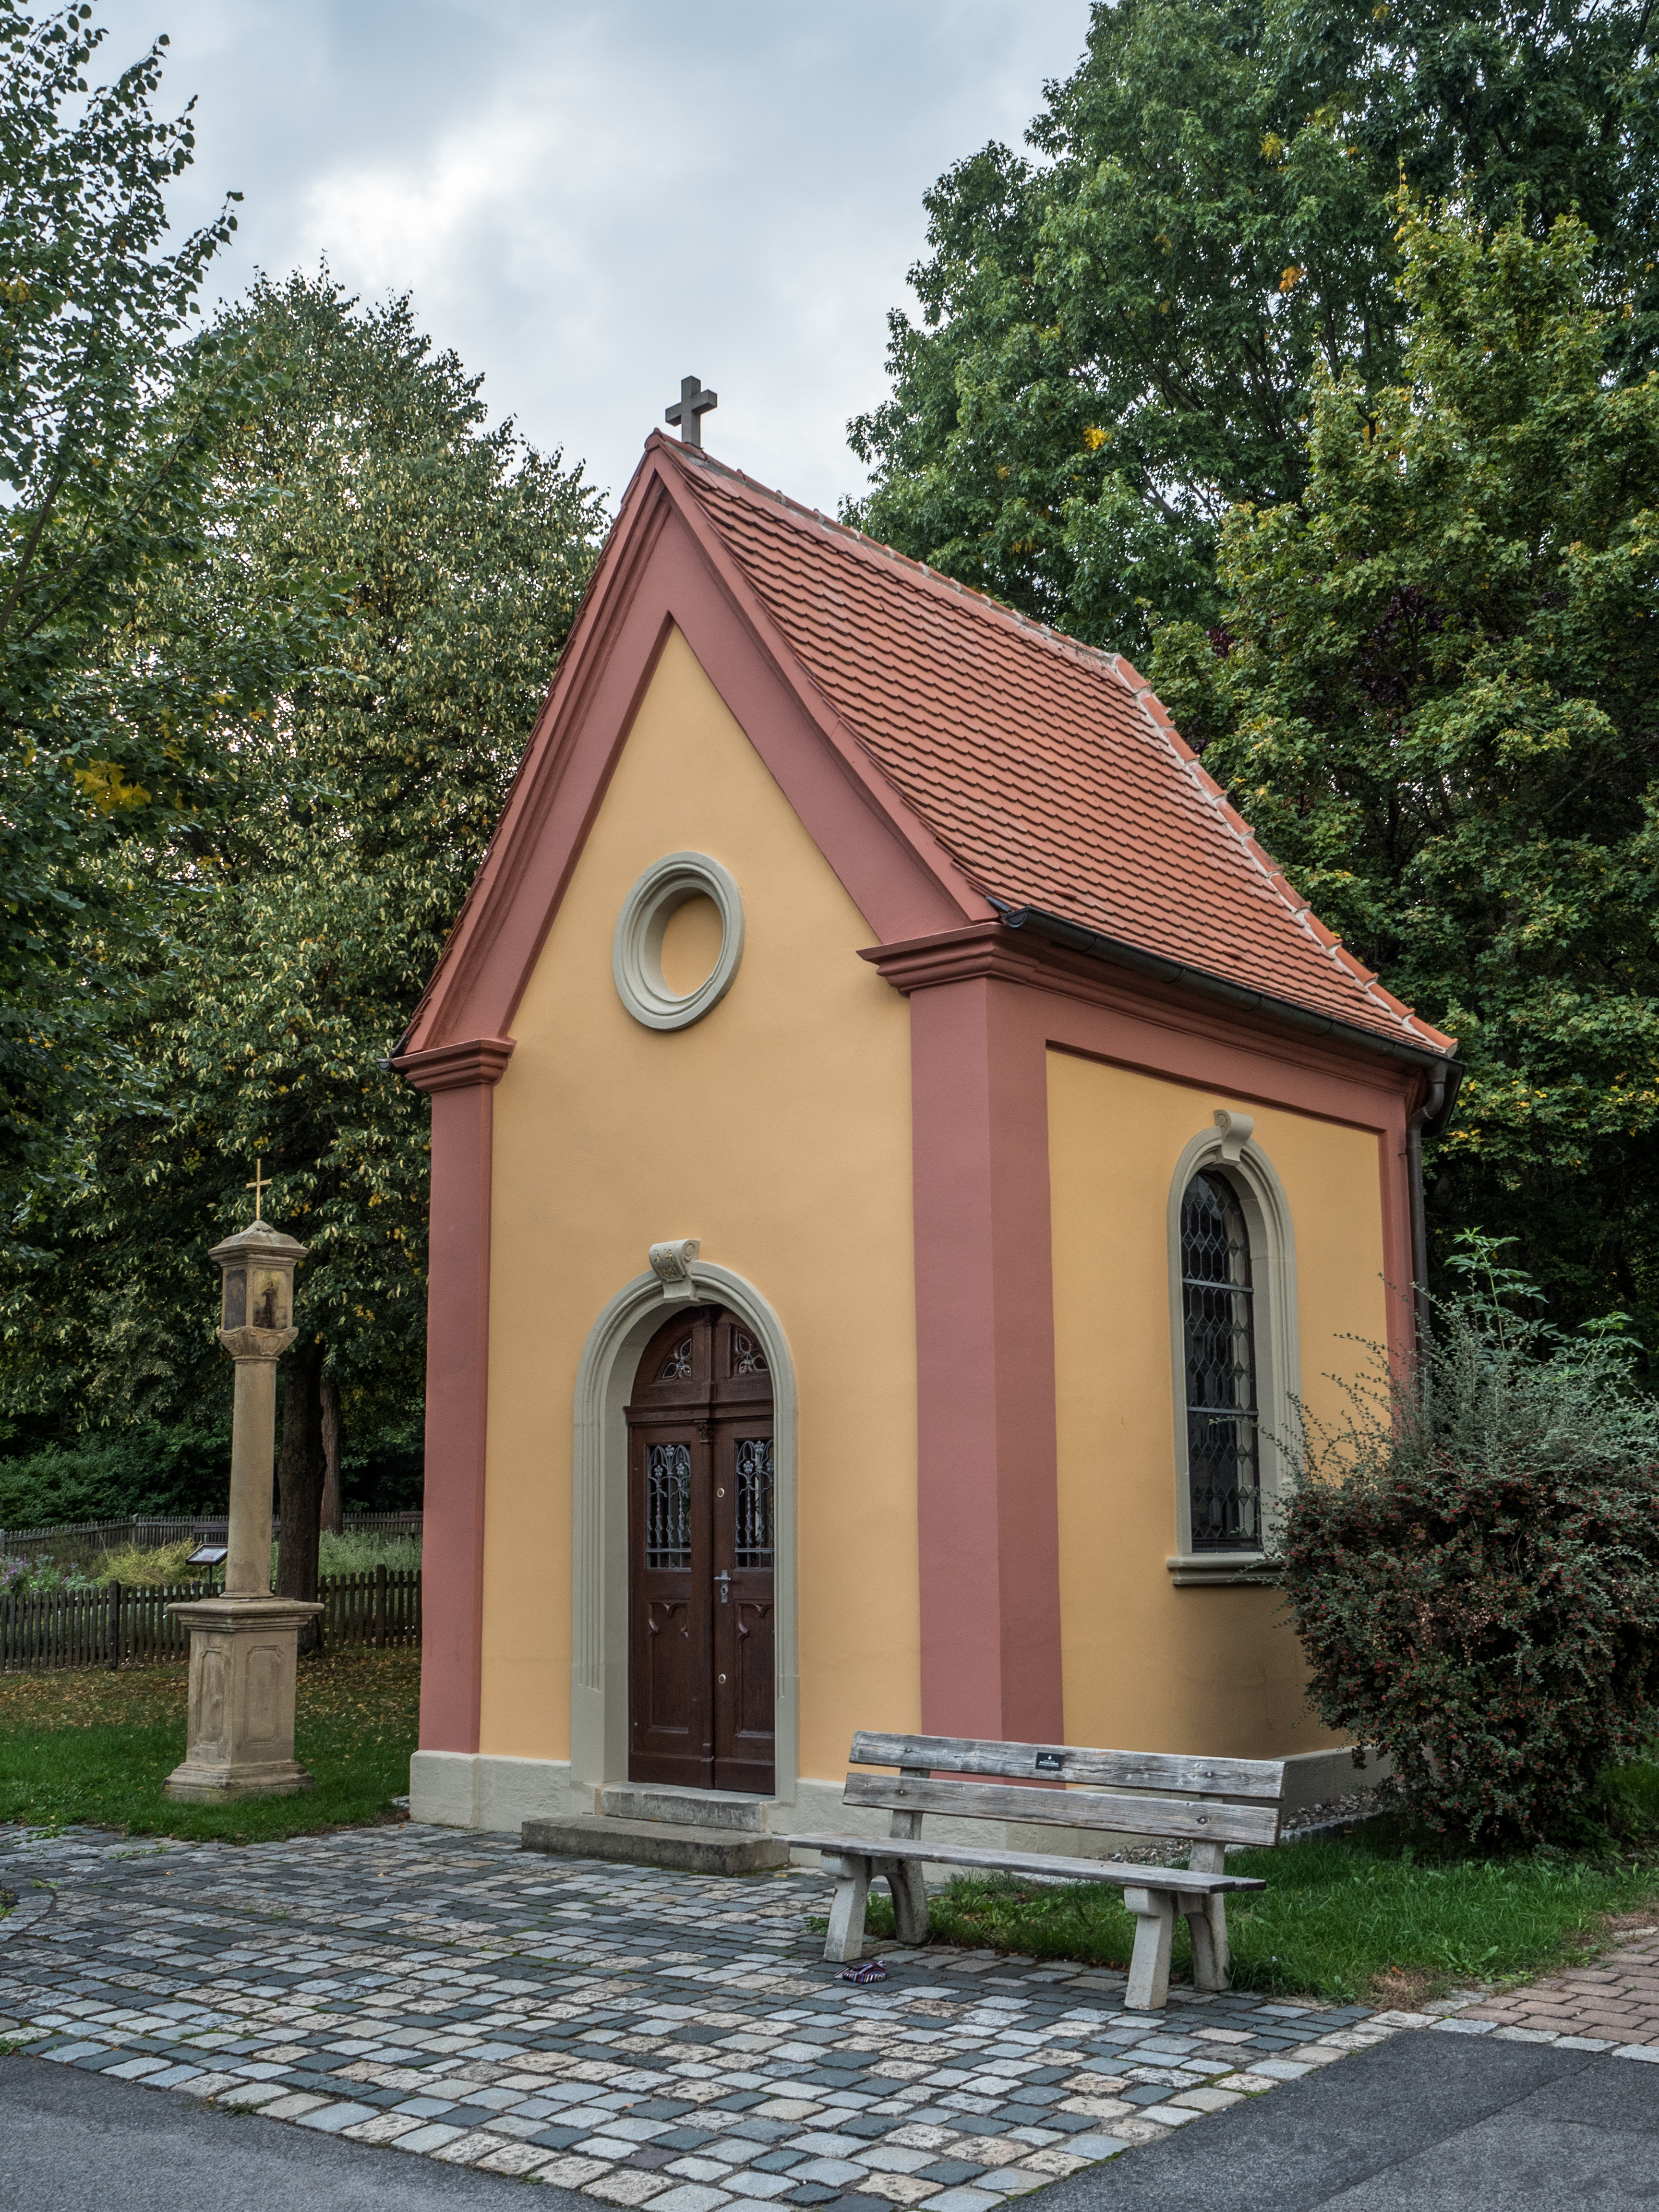 Kapelle-Wildensorg-9183379